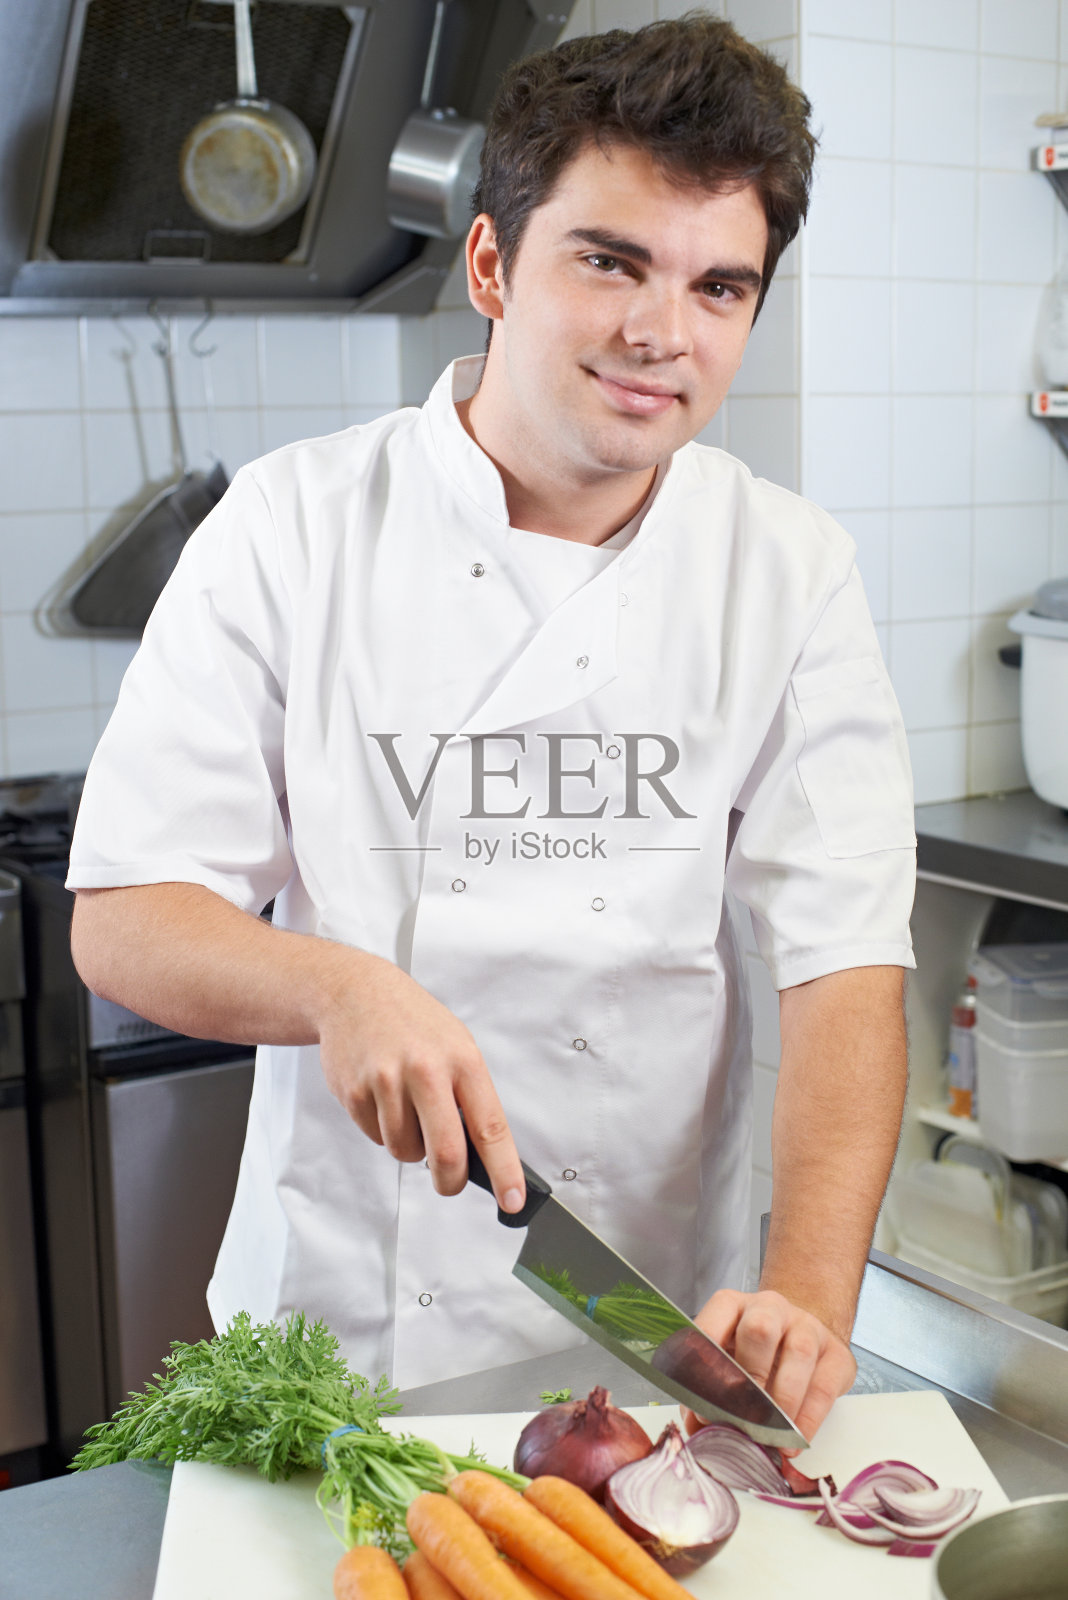 厨师在餐厅厨房准备蔬菜的肖像照片摄影图片